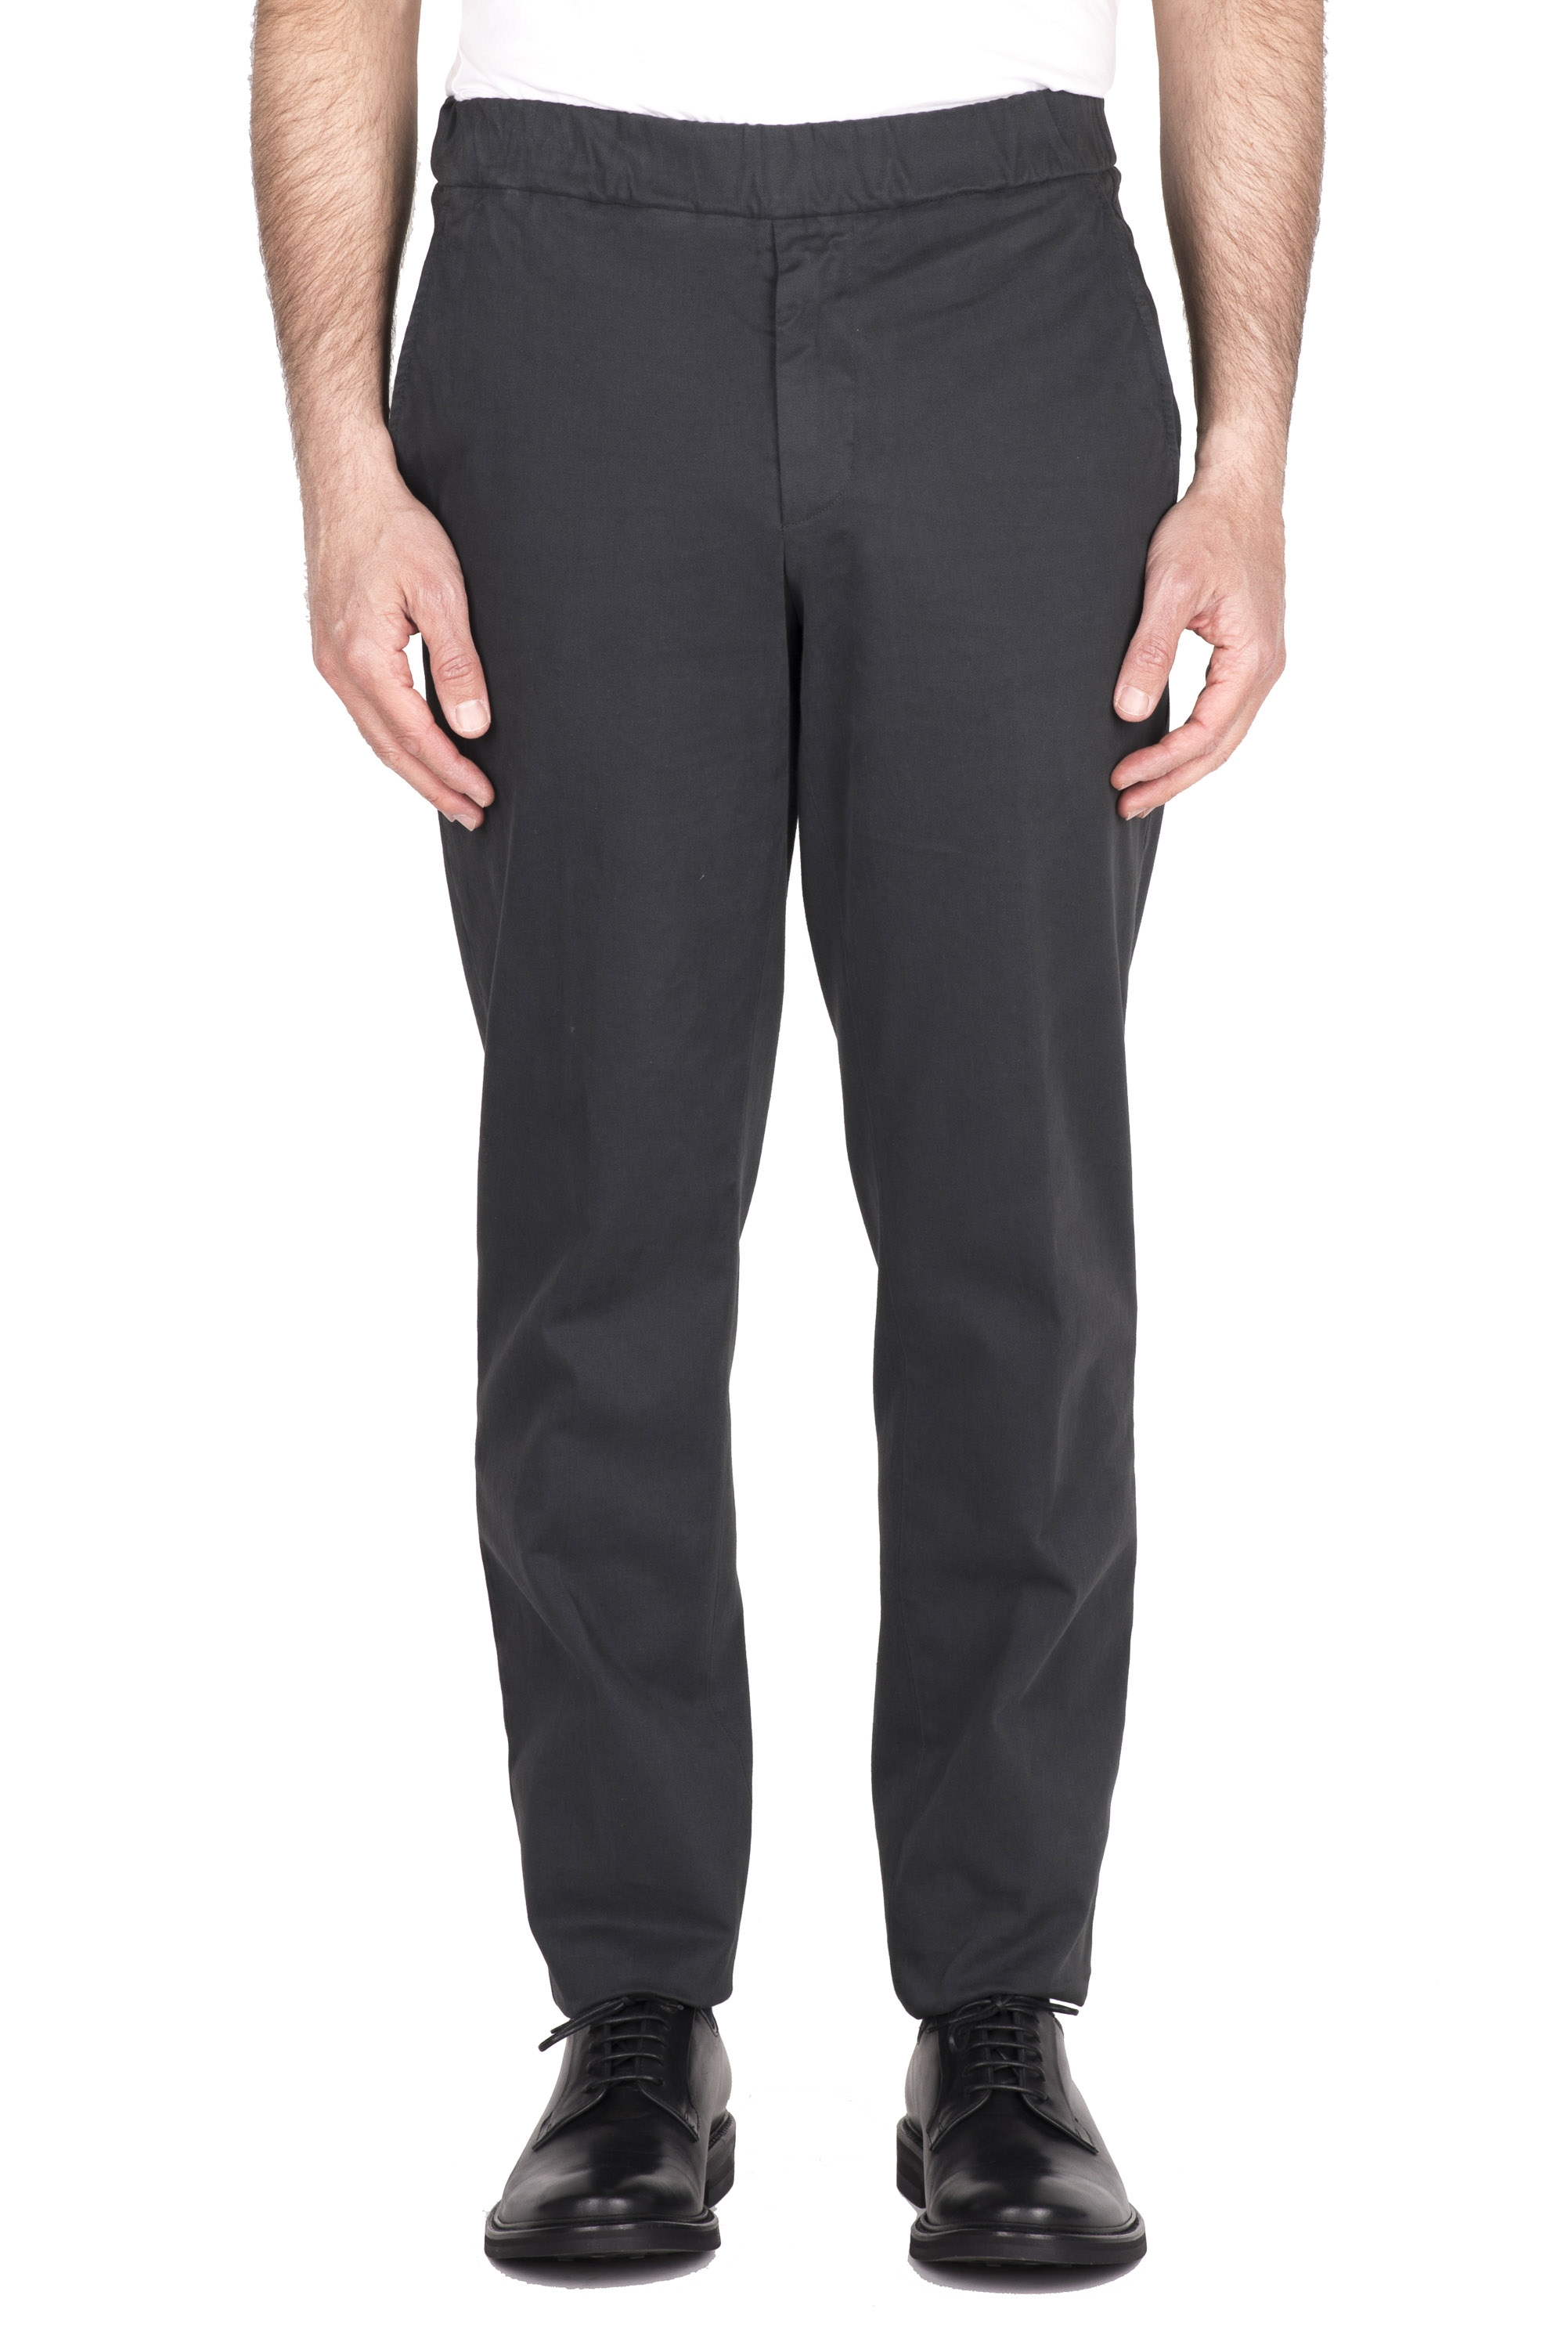 SBU 04623_23AW Pantaloni comfort in cotone elasticizzato grigio 01